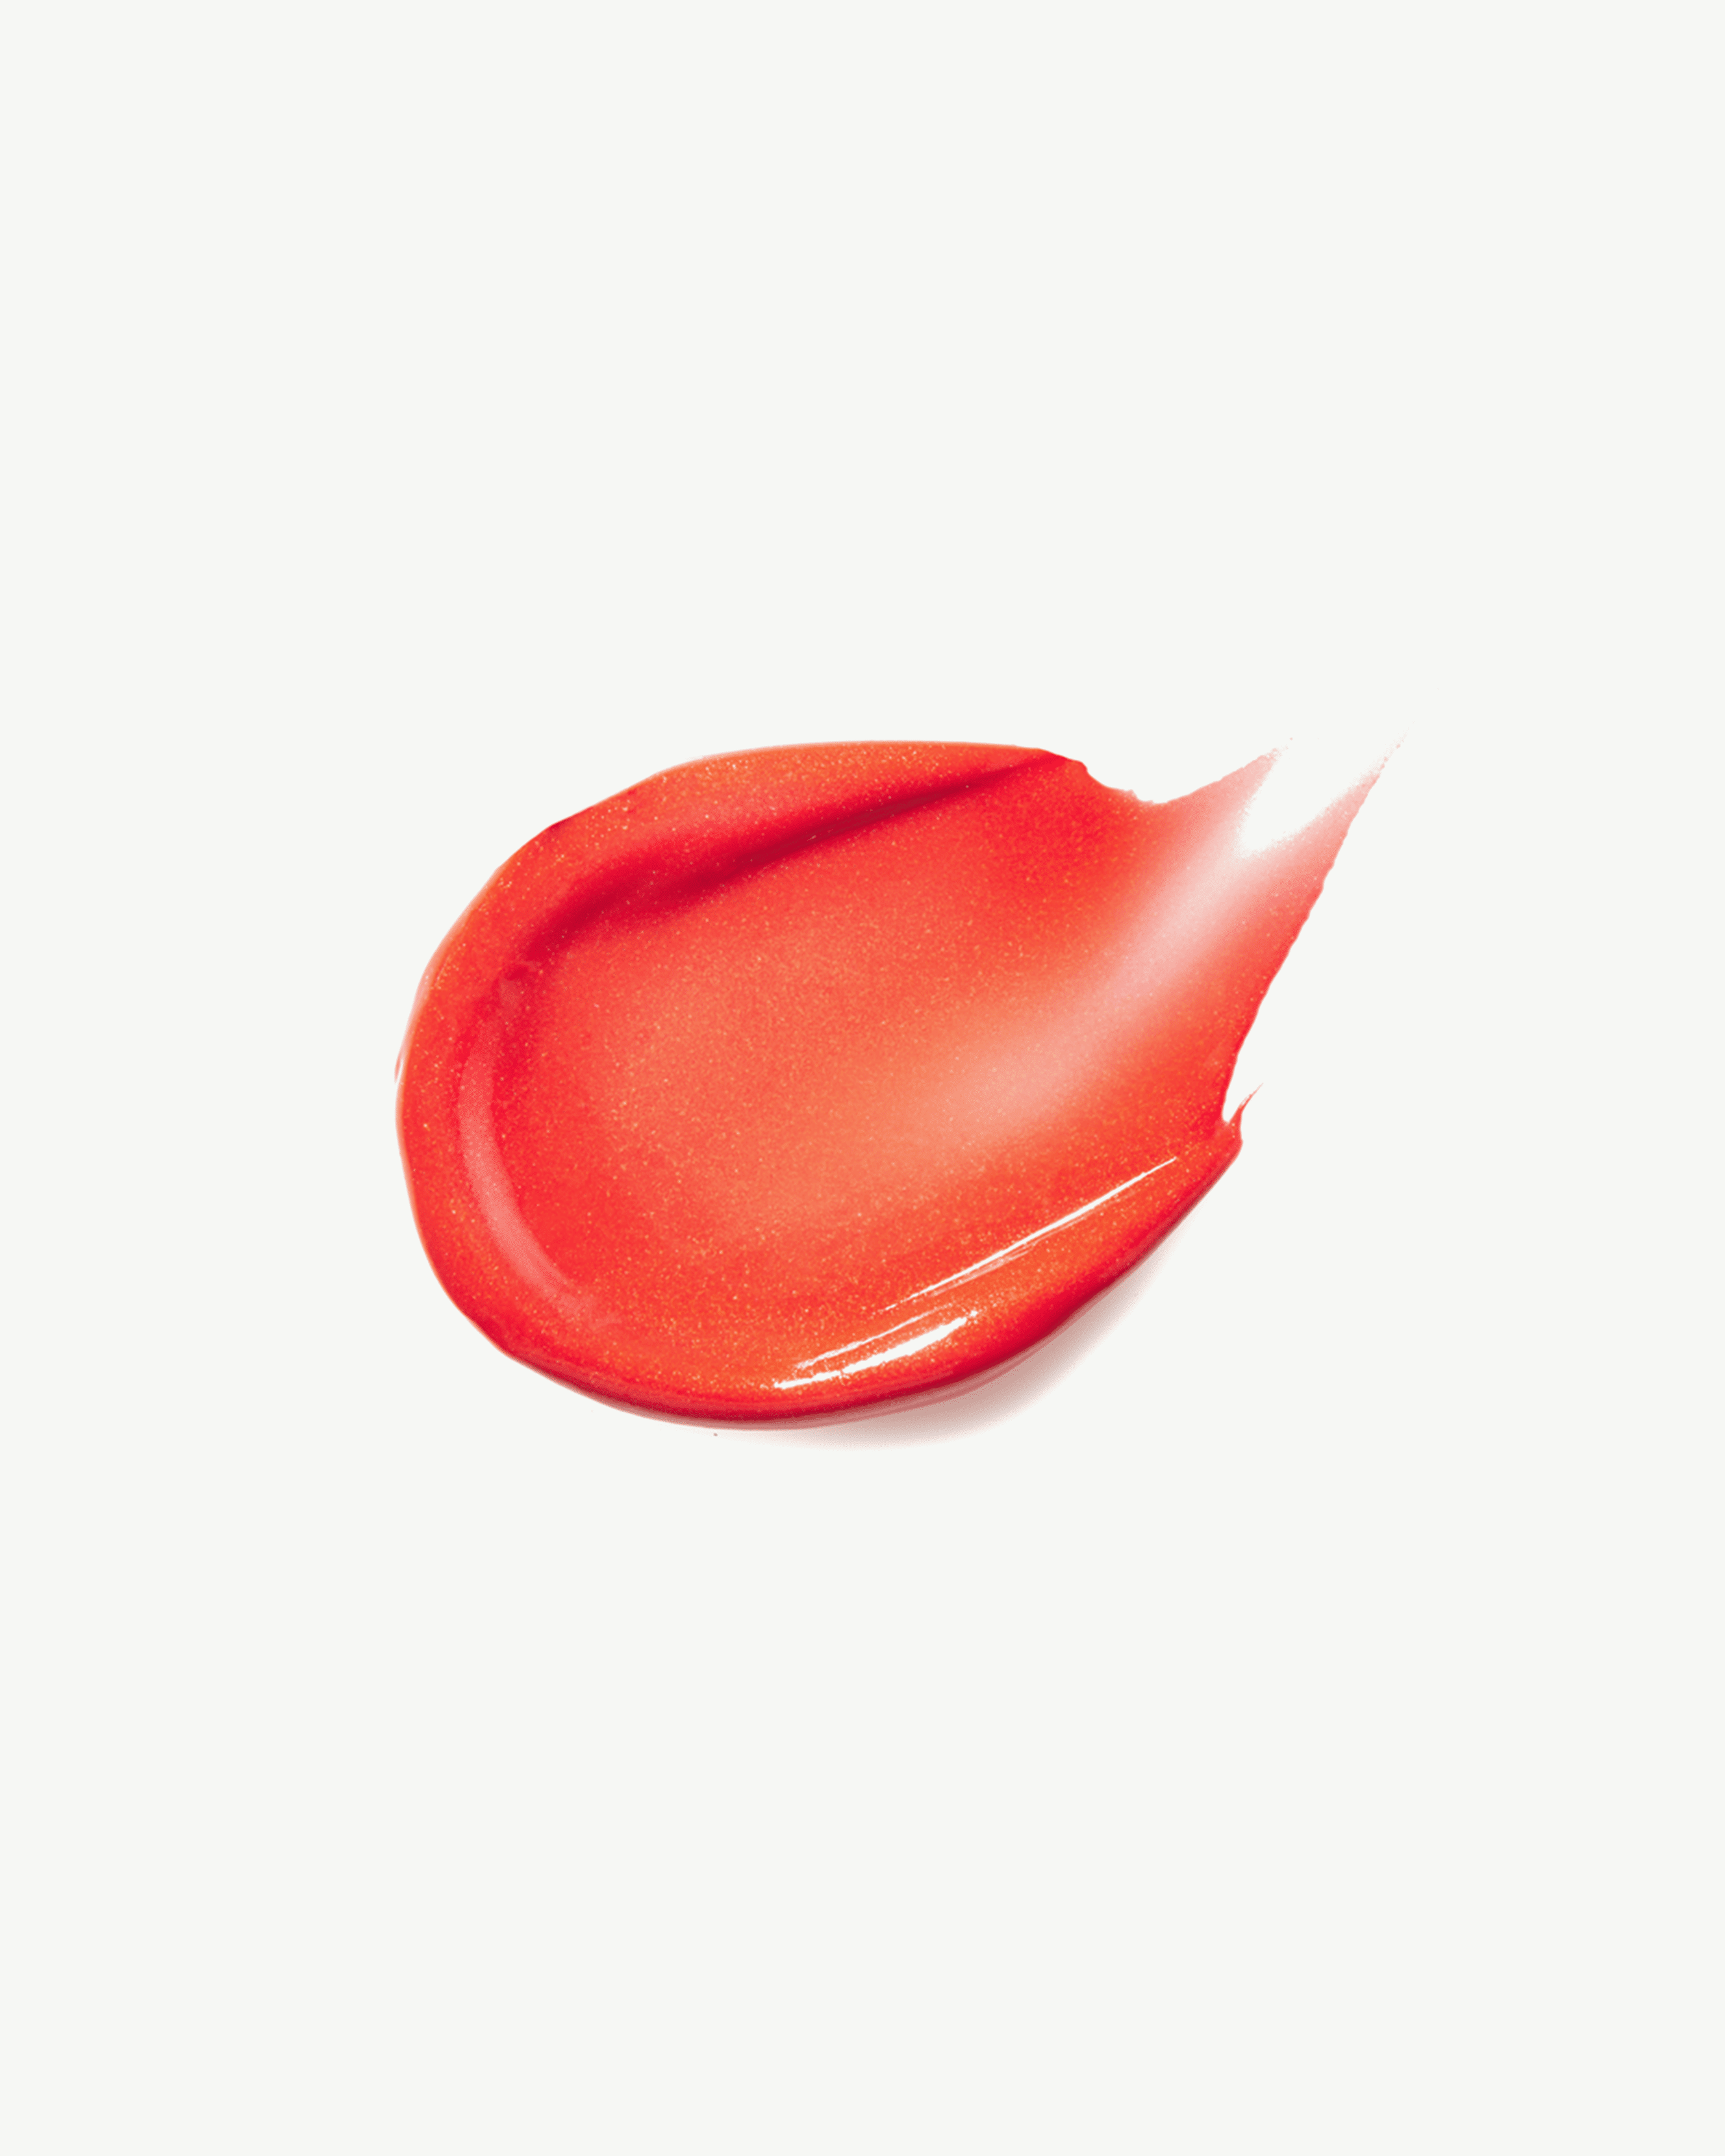 Babette (sheer orange red with a subtle shimmer)